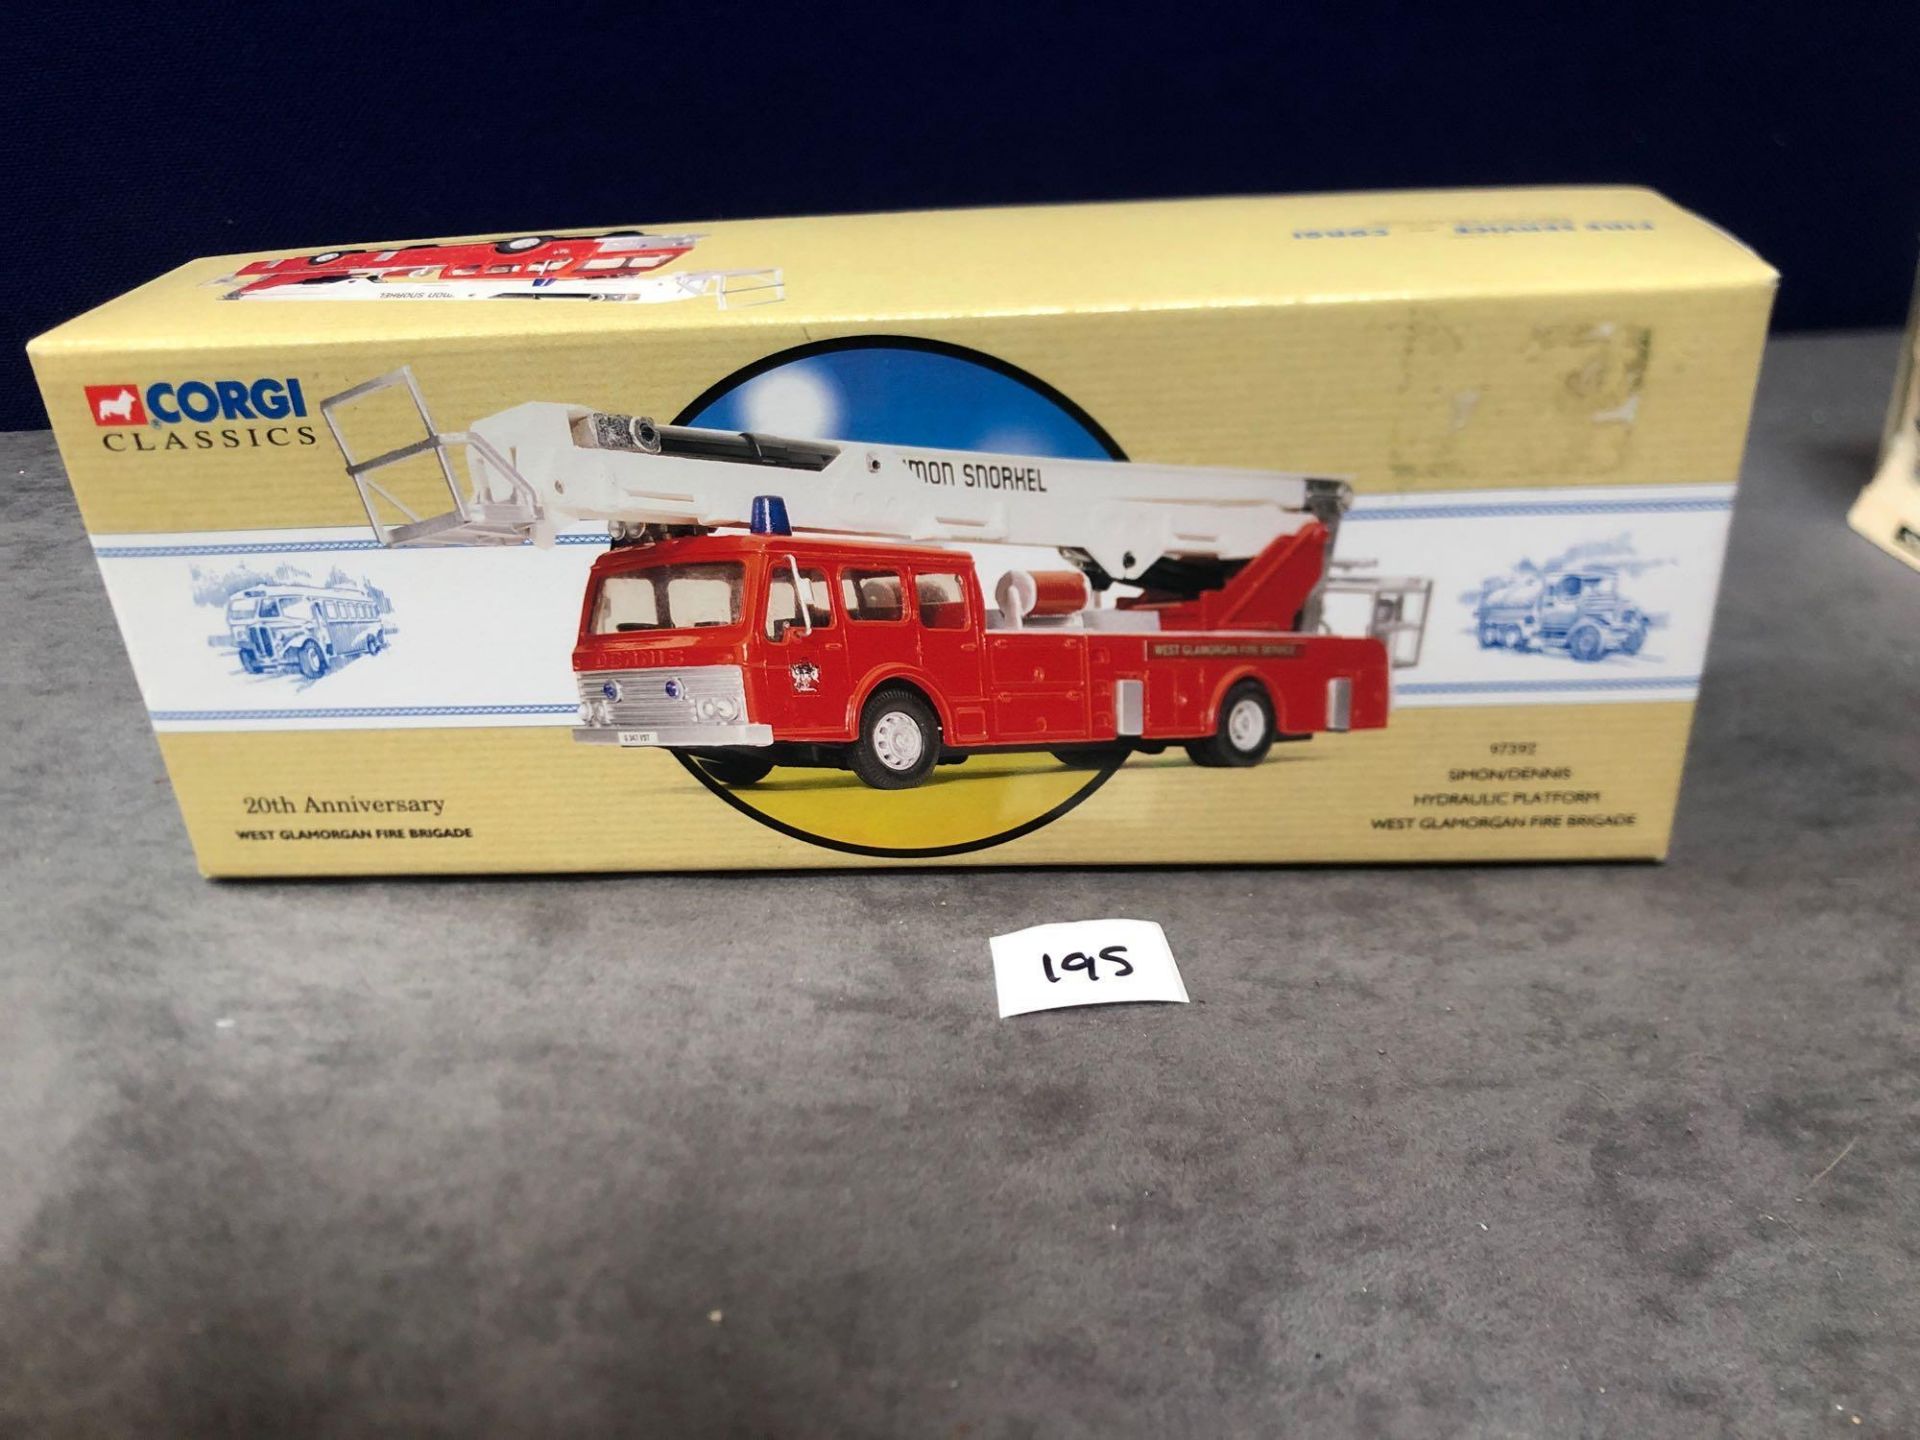 Corgi Classics # 97392 Simon/Dennis Hydraulic Platform West Glamorgan Fire Brigade In Box Limited